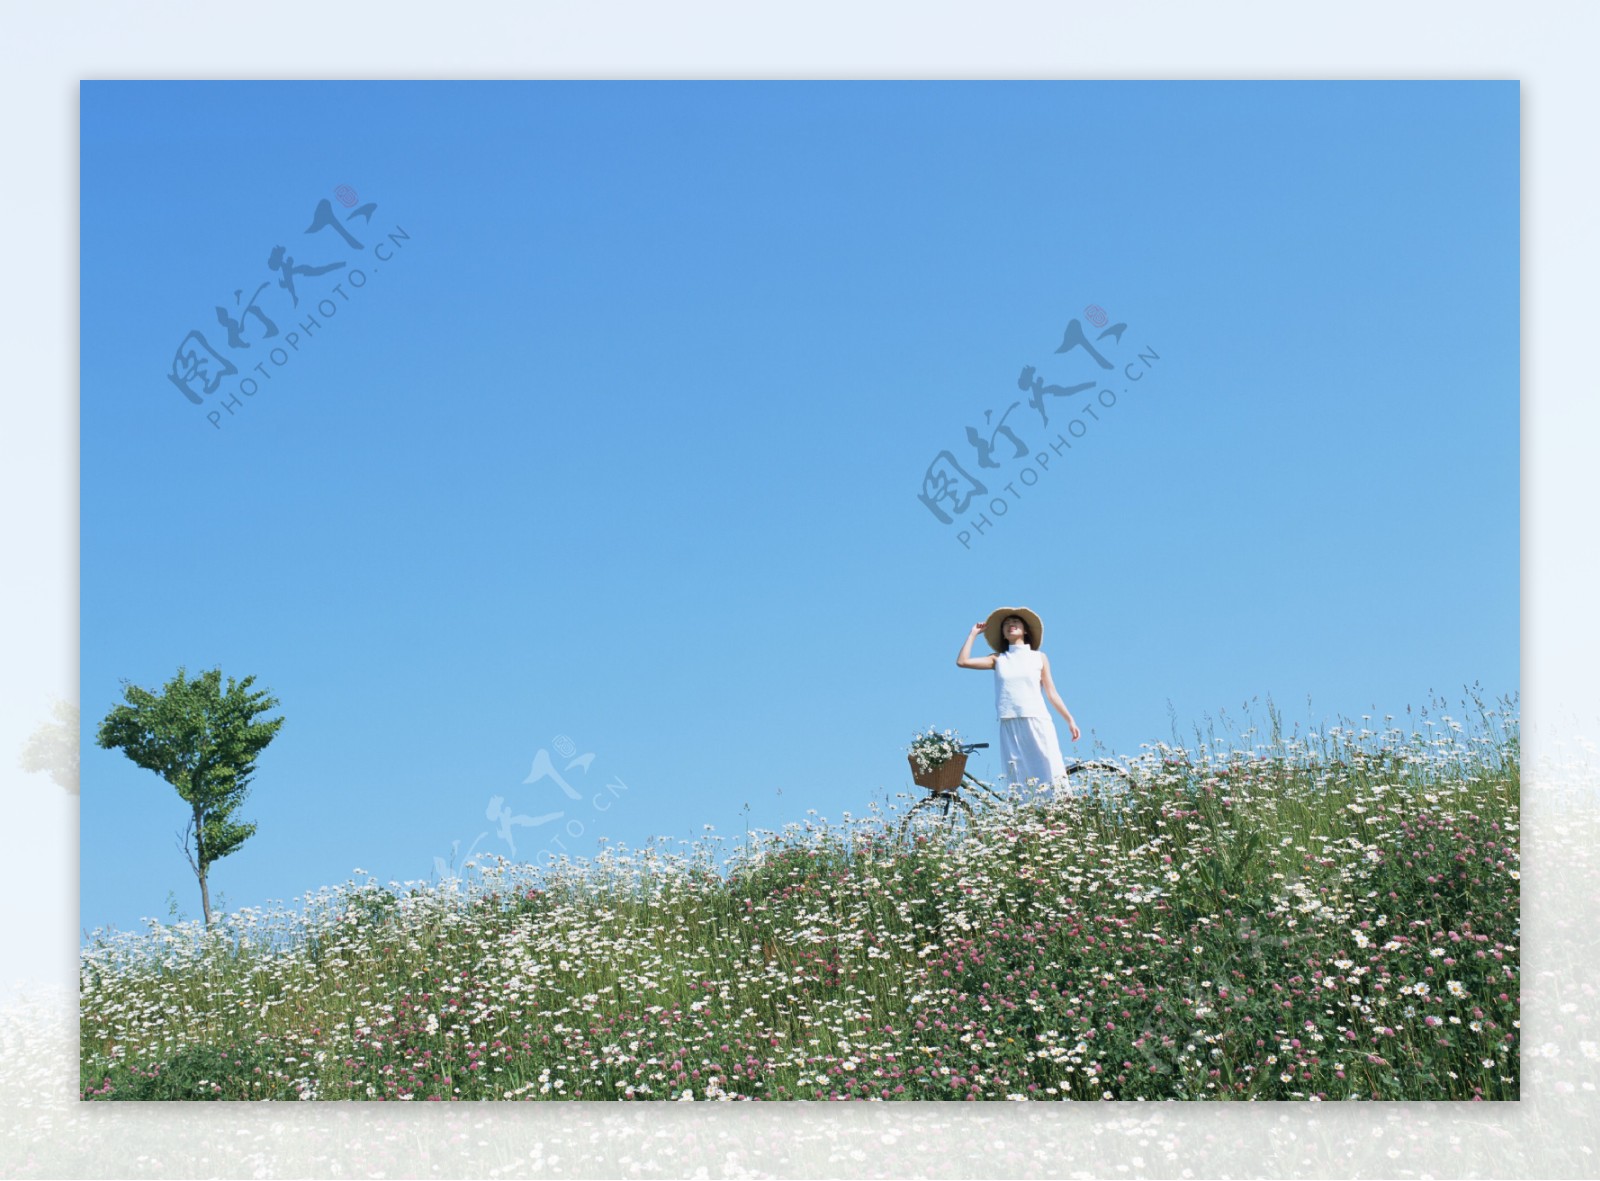 站立在花丛中的女人图片